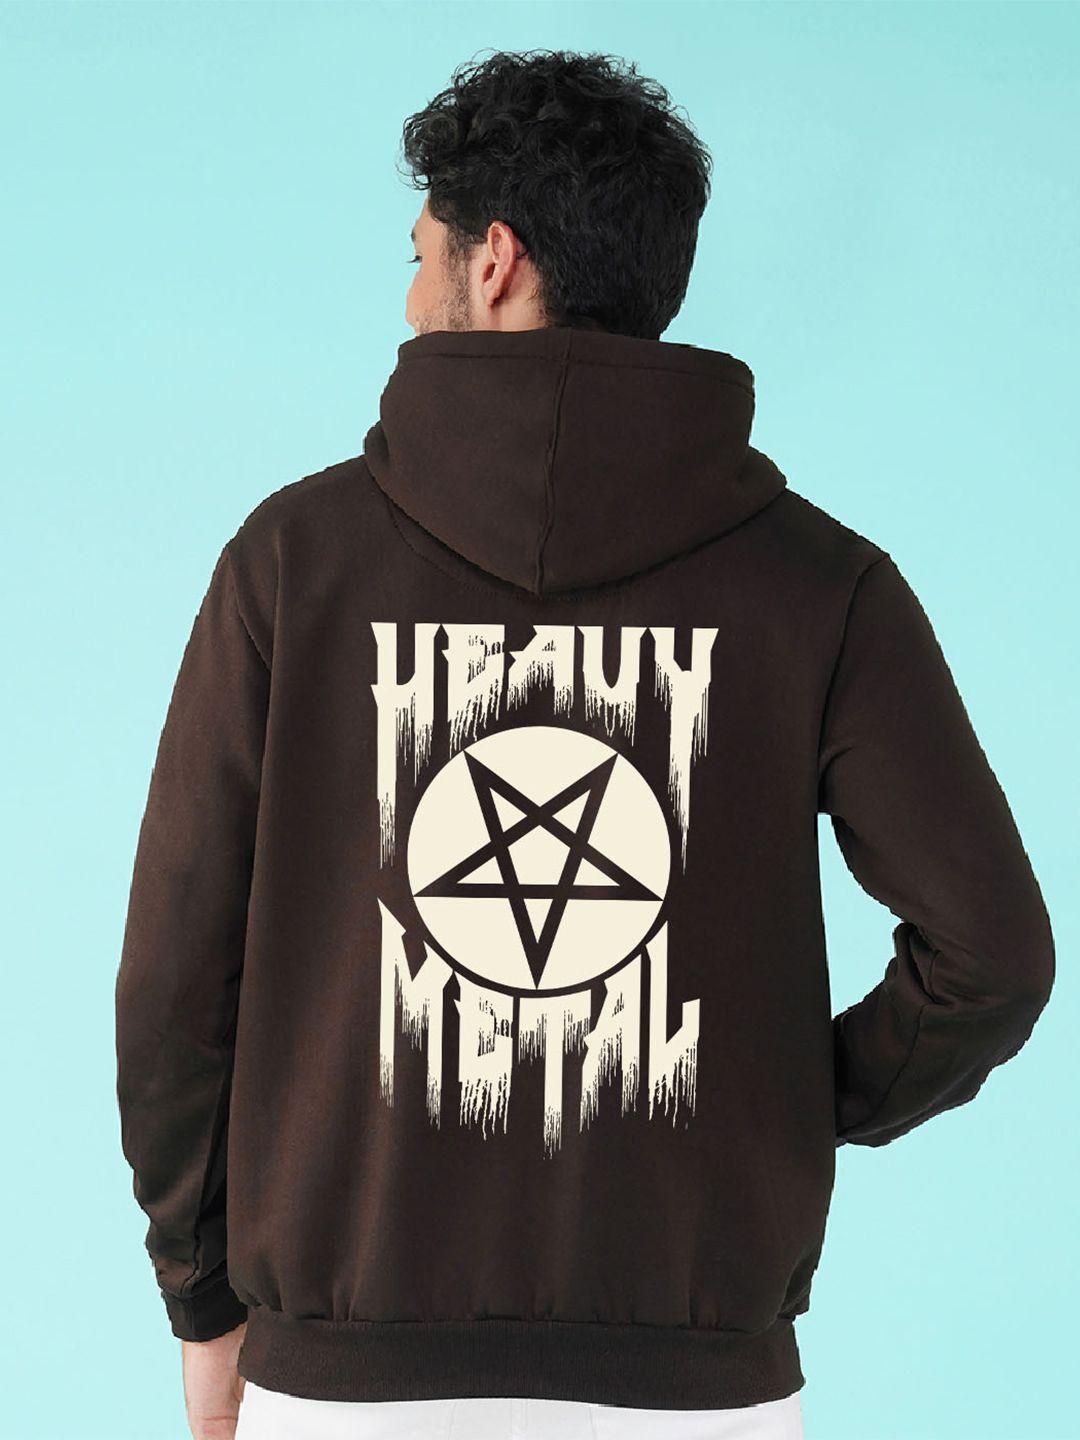 nusyl heavy metal printed hooded fleece pullover